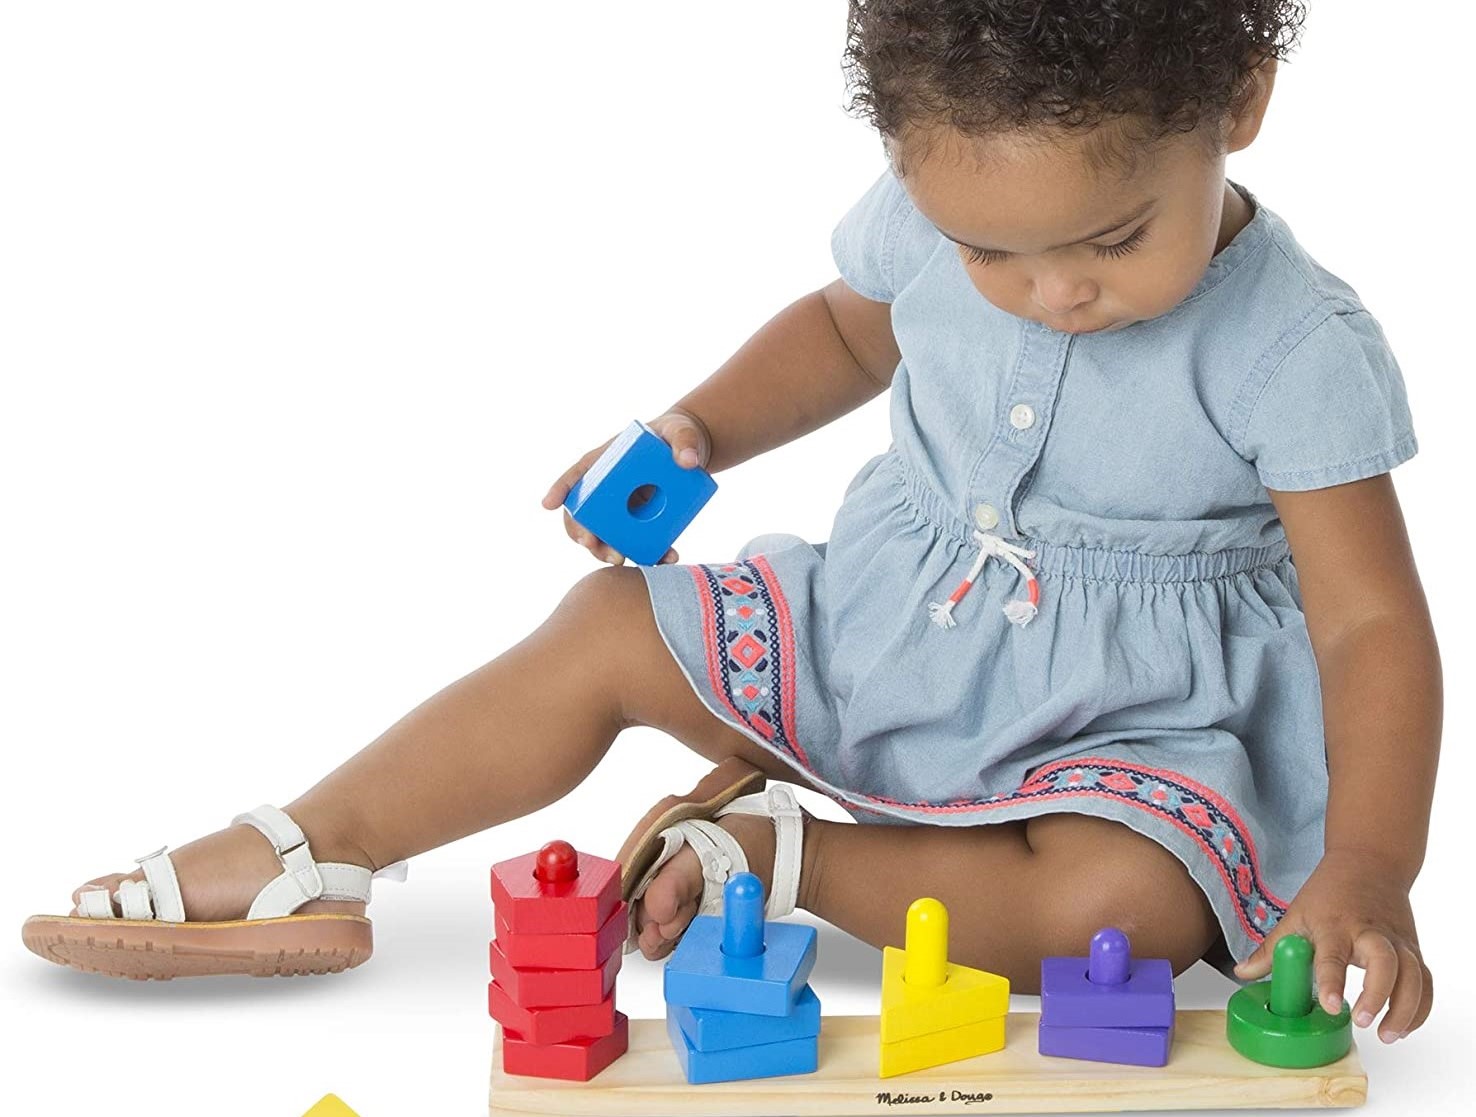 Montessori madera steckspiel sortierspiel juegos de niños juguetes adecuado 